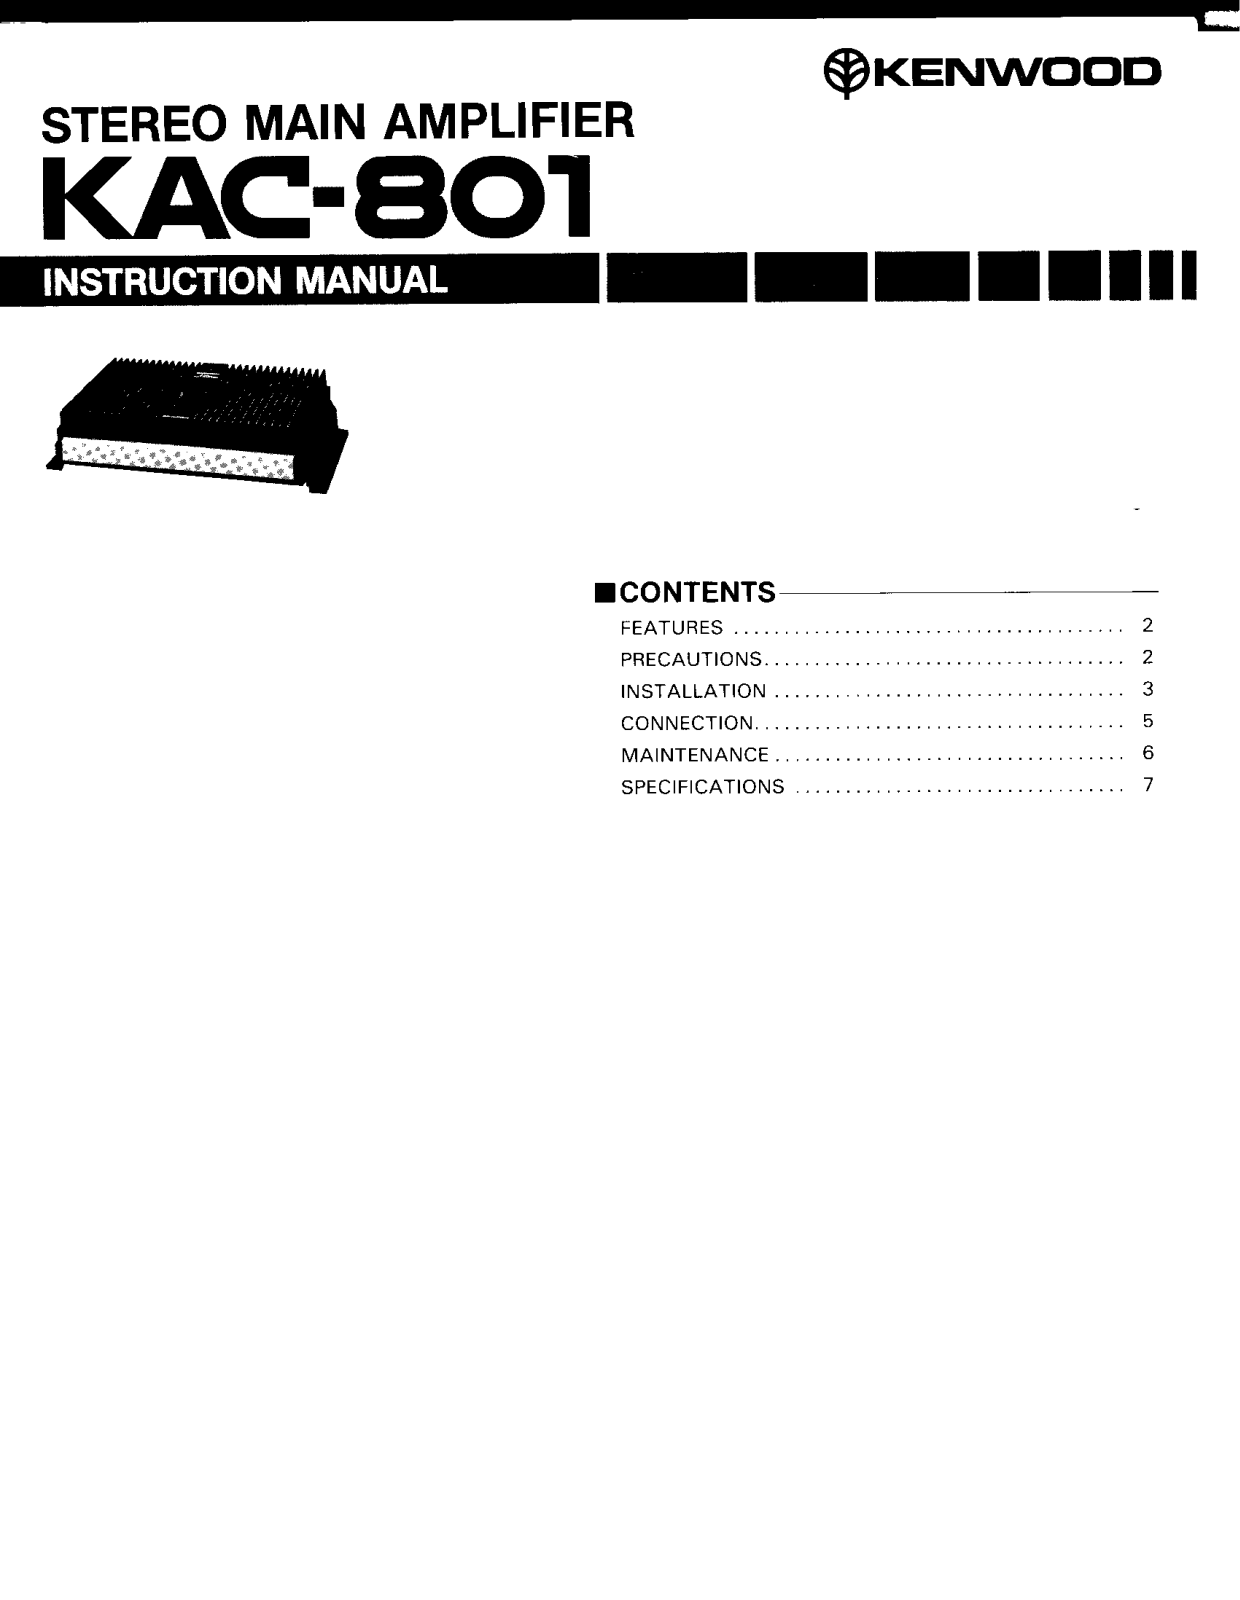 Kenwood KAC-801 Owner's Manual